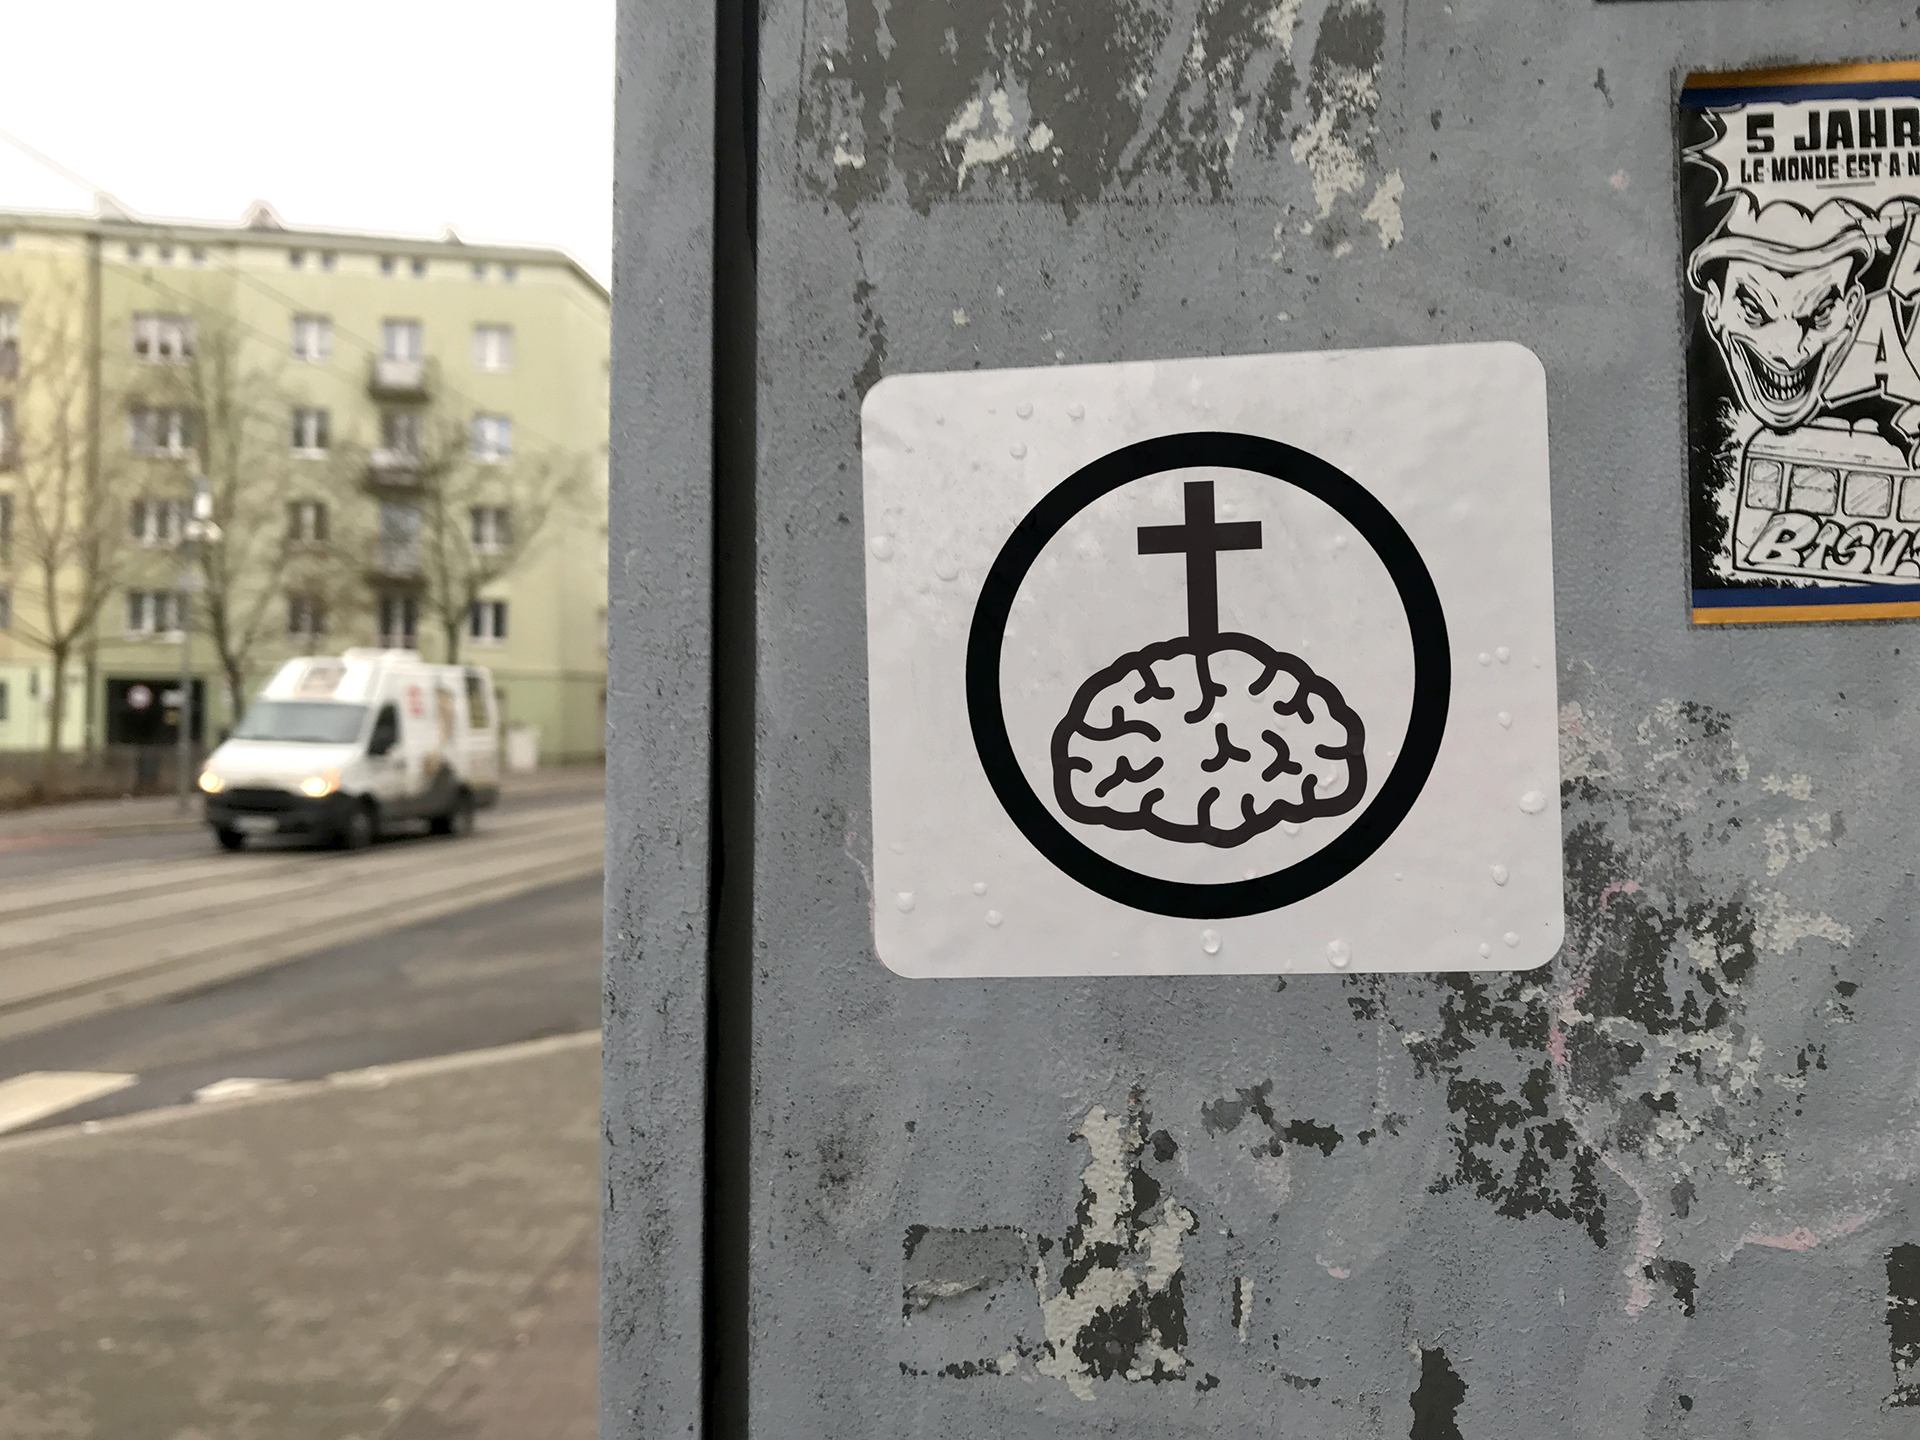 Fotografia przedstawia naklejkę w przestrzeni miejskiej na której widać zgrafizowany i przedstawiony w uproszczonej formie ludzki mózg z krzyżem, całość czarno biała wpisana w okrąg.